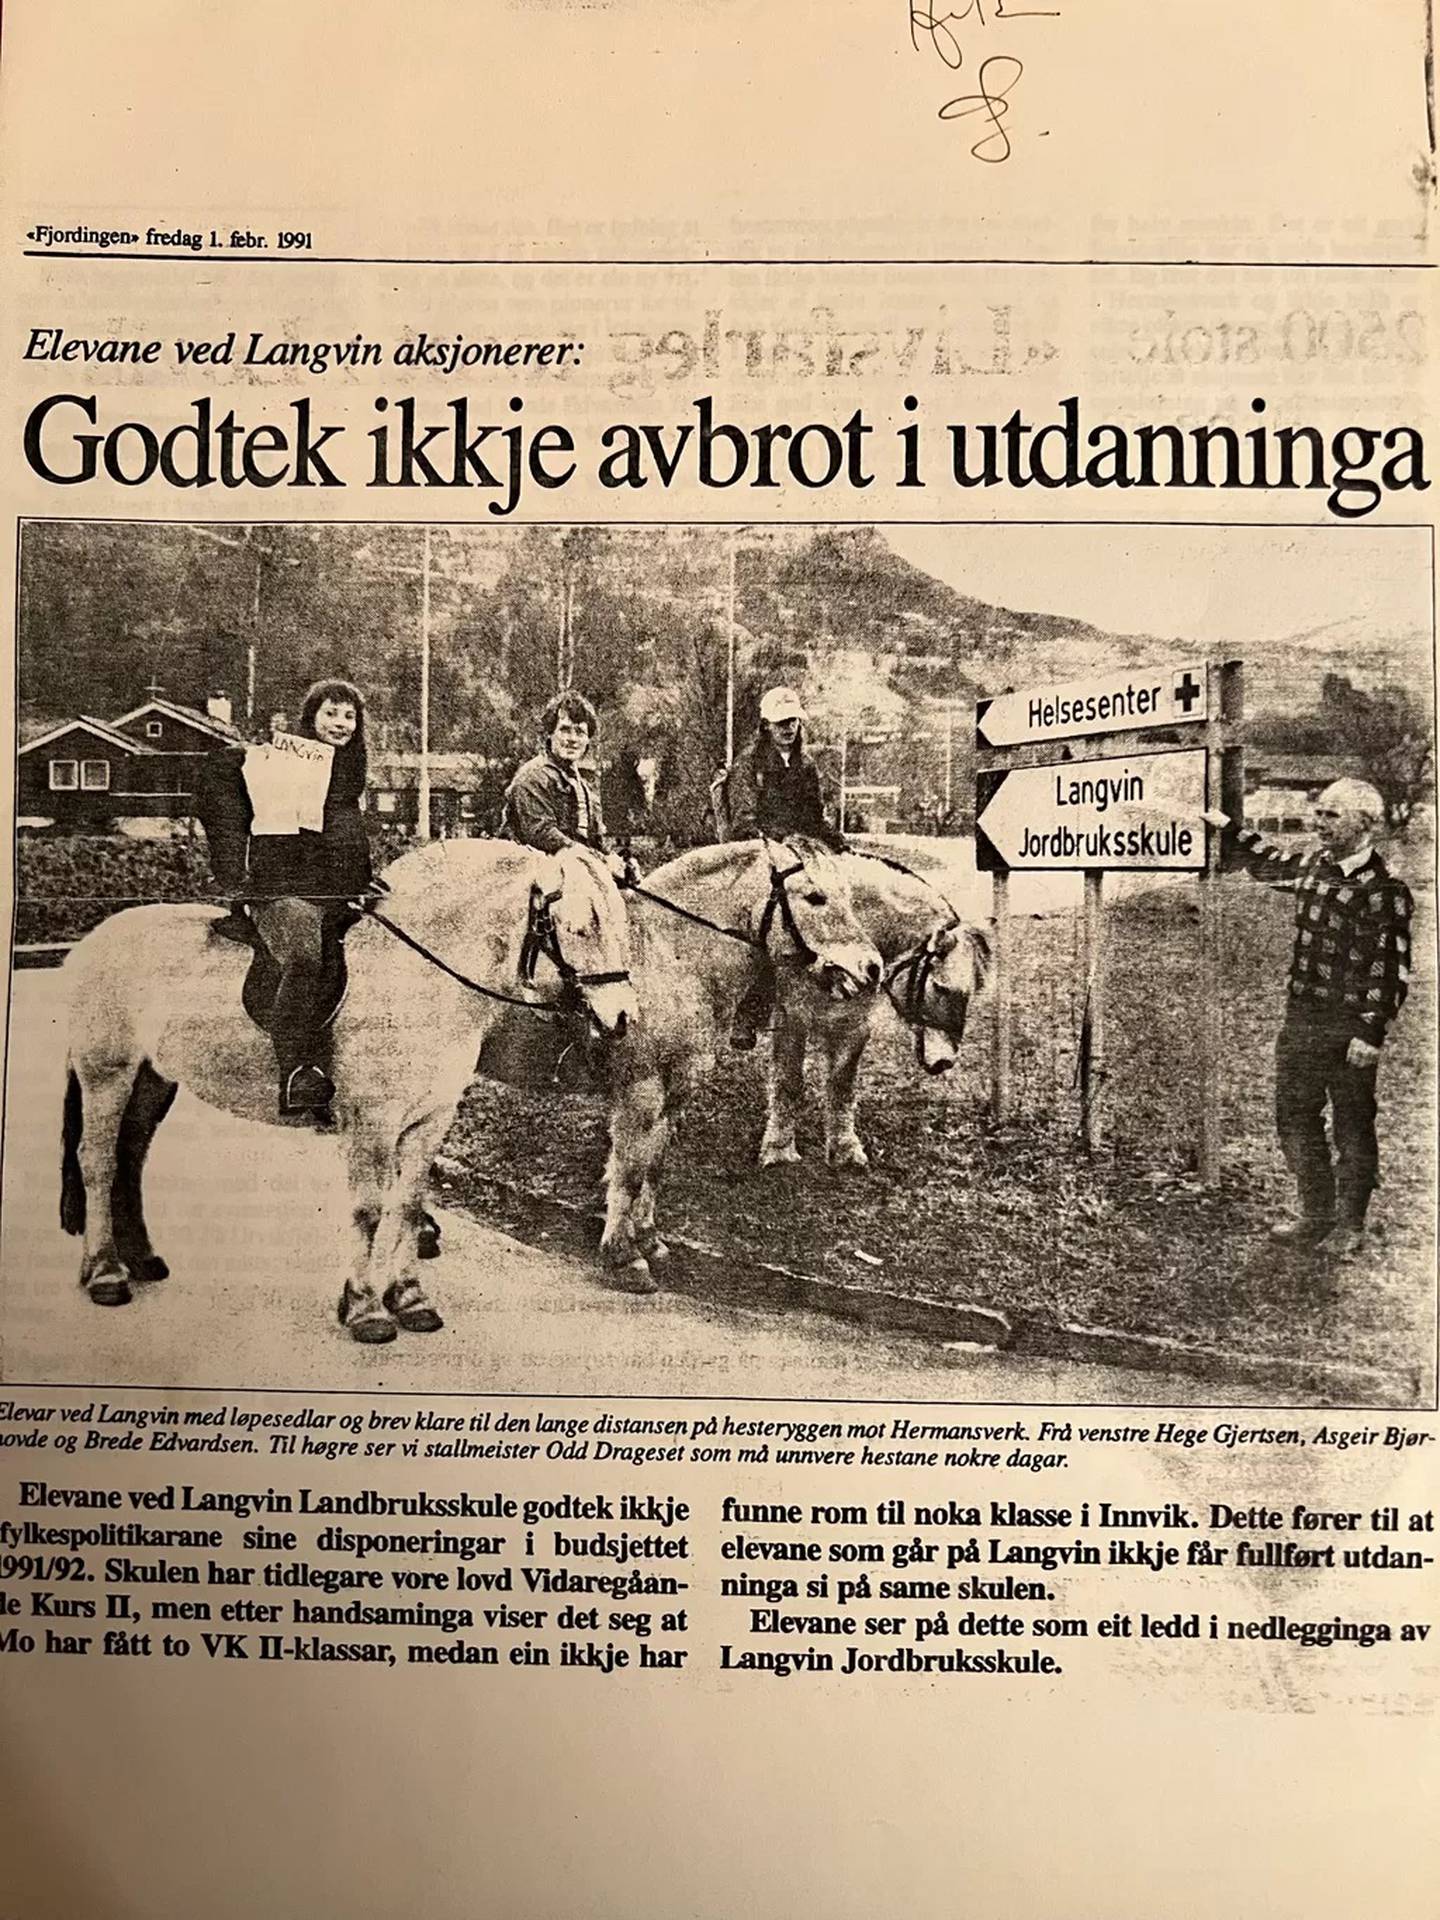 Protest til hest i 1991. Moren til Brede har tatt vare på mye fra fortida, blant annet dette klippet fra avisa Fjordingen.

Foto: Privat